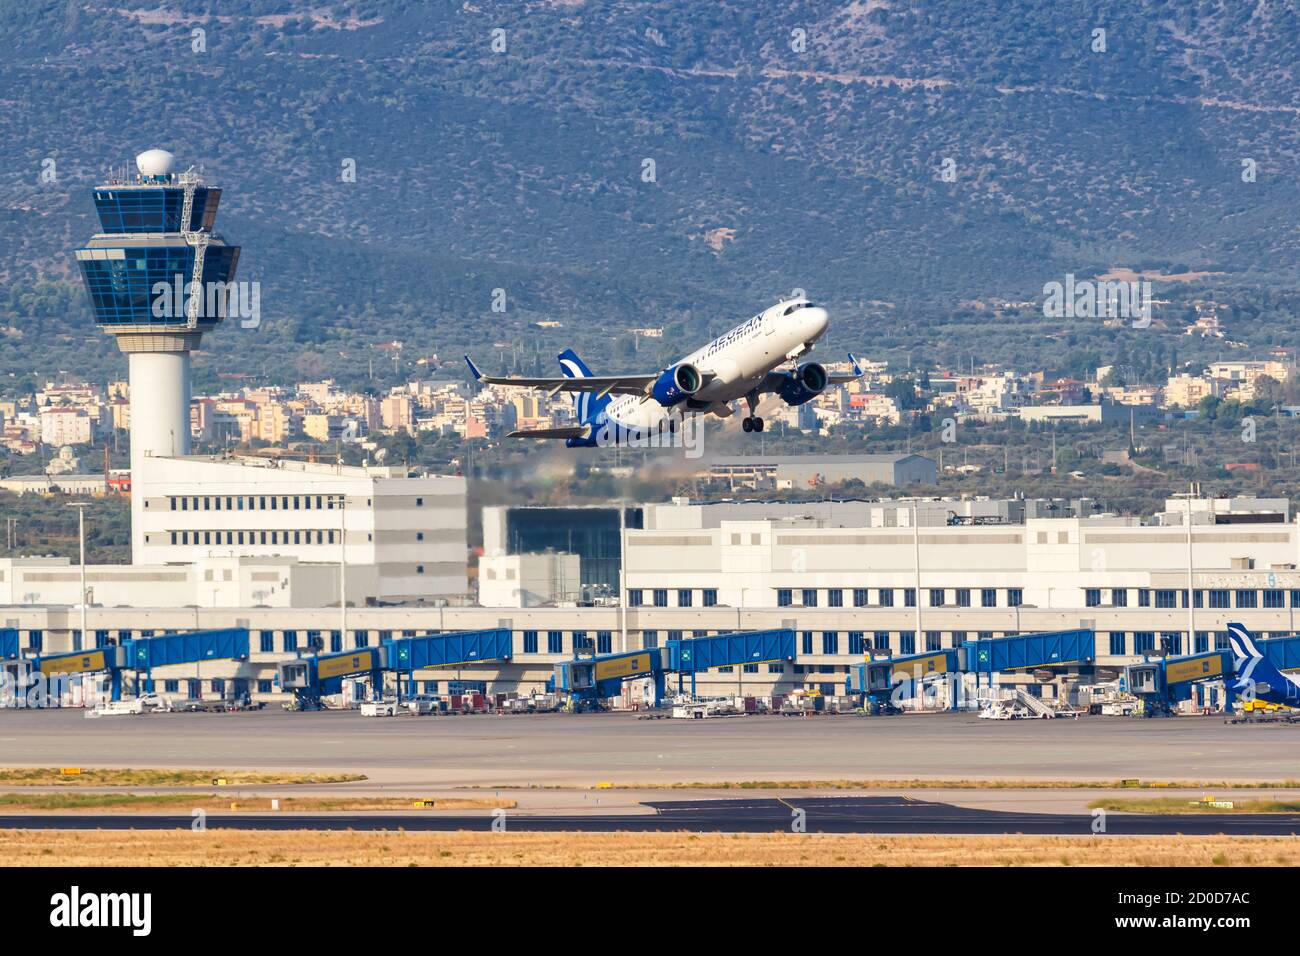 Athènes, Grèce - 22 septembre 2020 : avion A320neo Airbus Aegean Airlines à l'aéroport d'Athènes en Grèce. Airbus est un fabricant européen d'avions b Banque D'Images